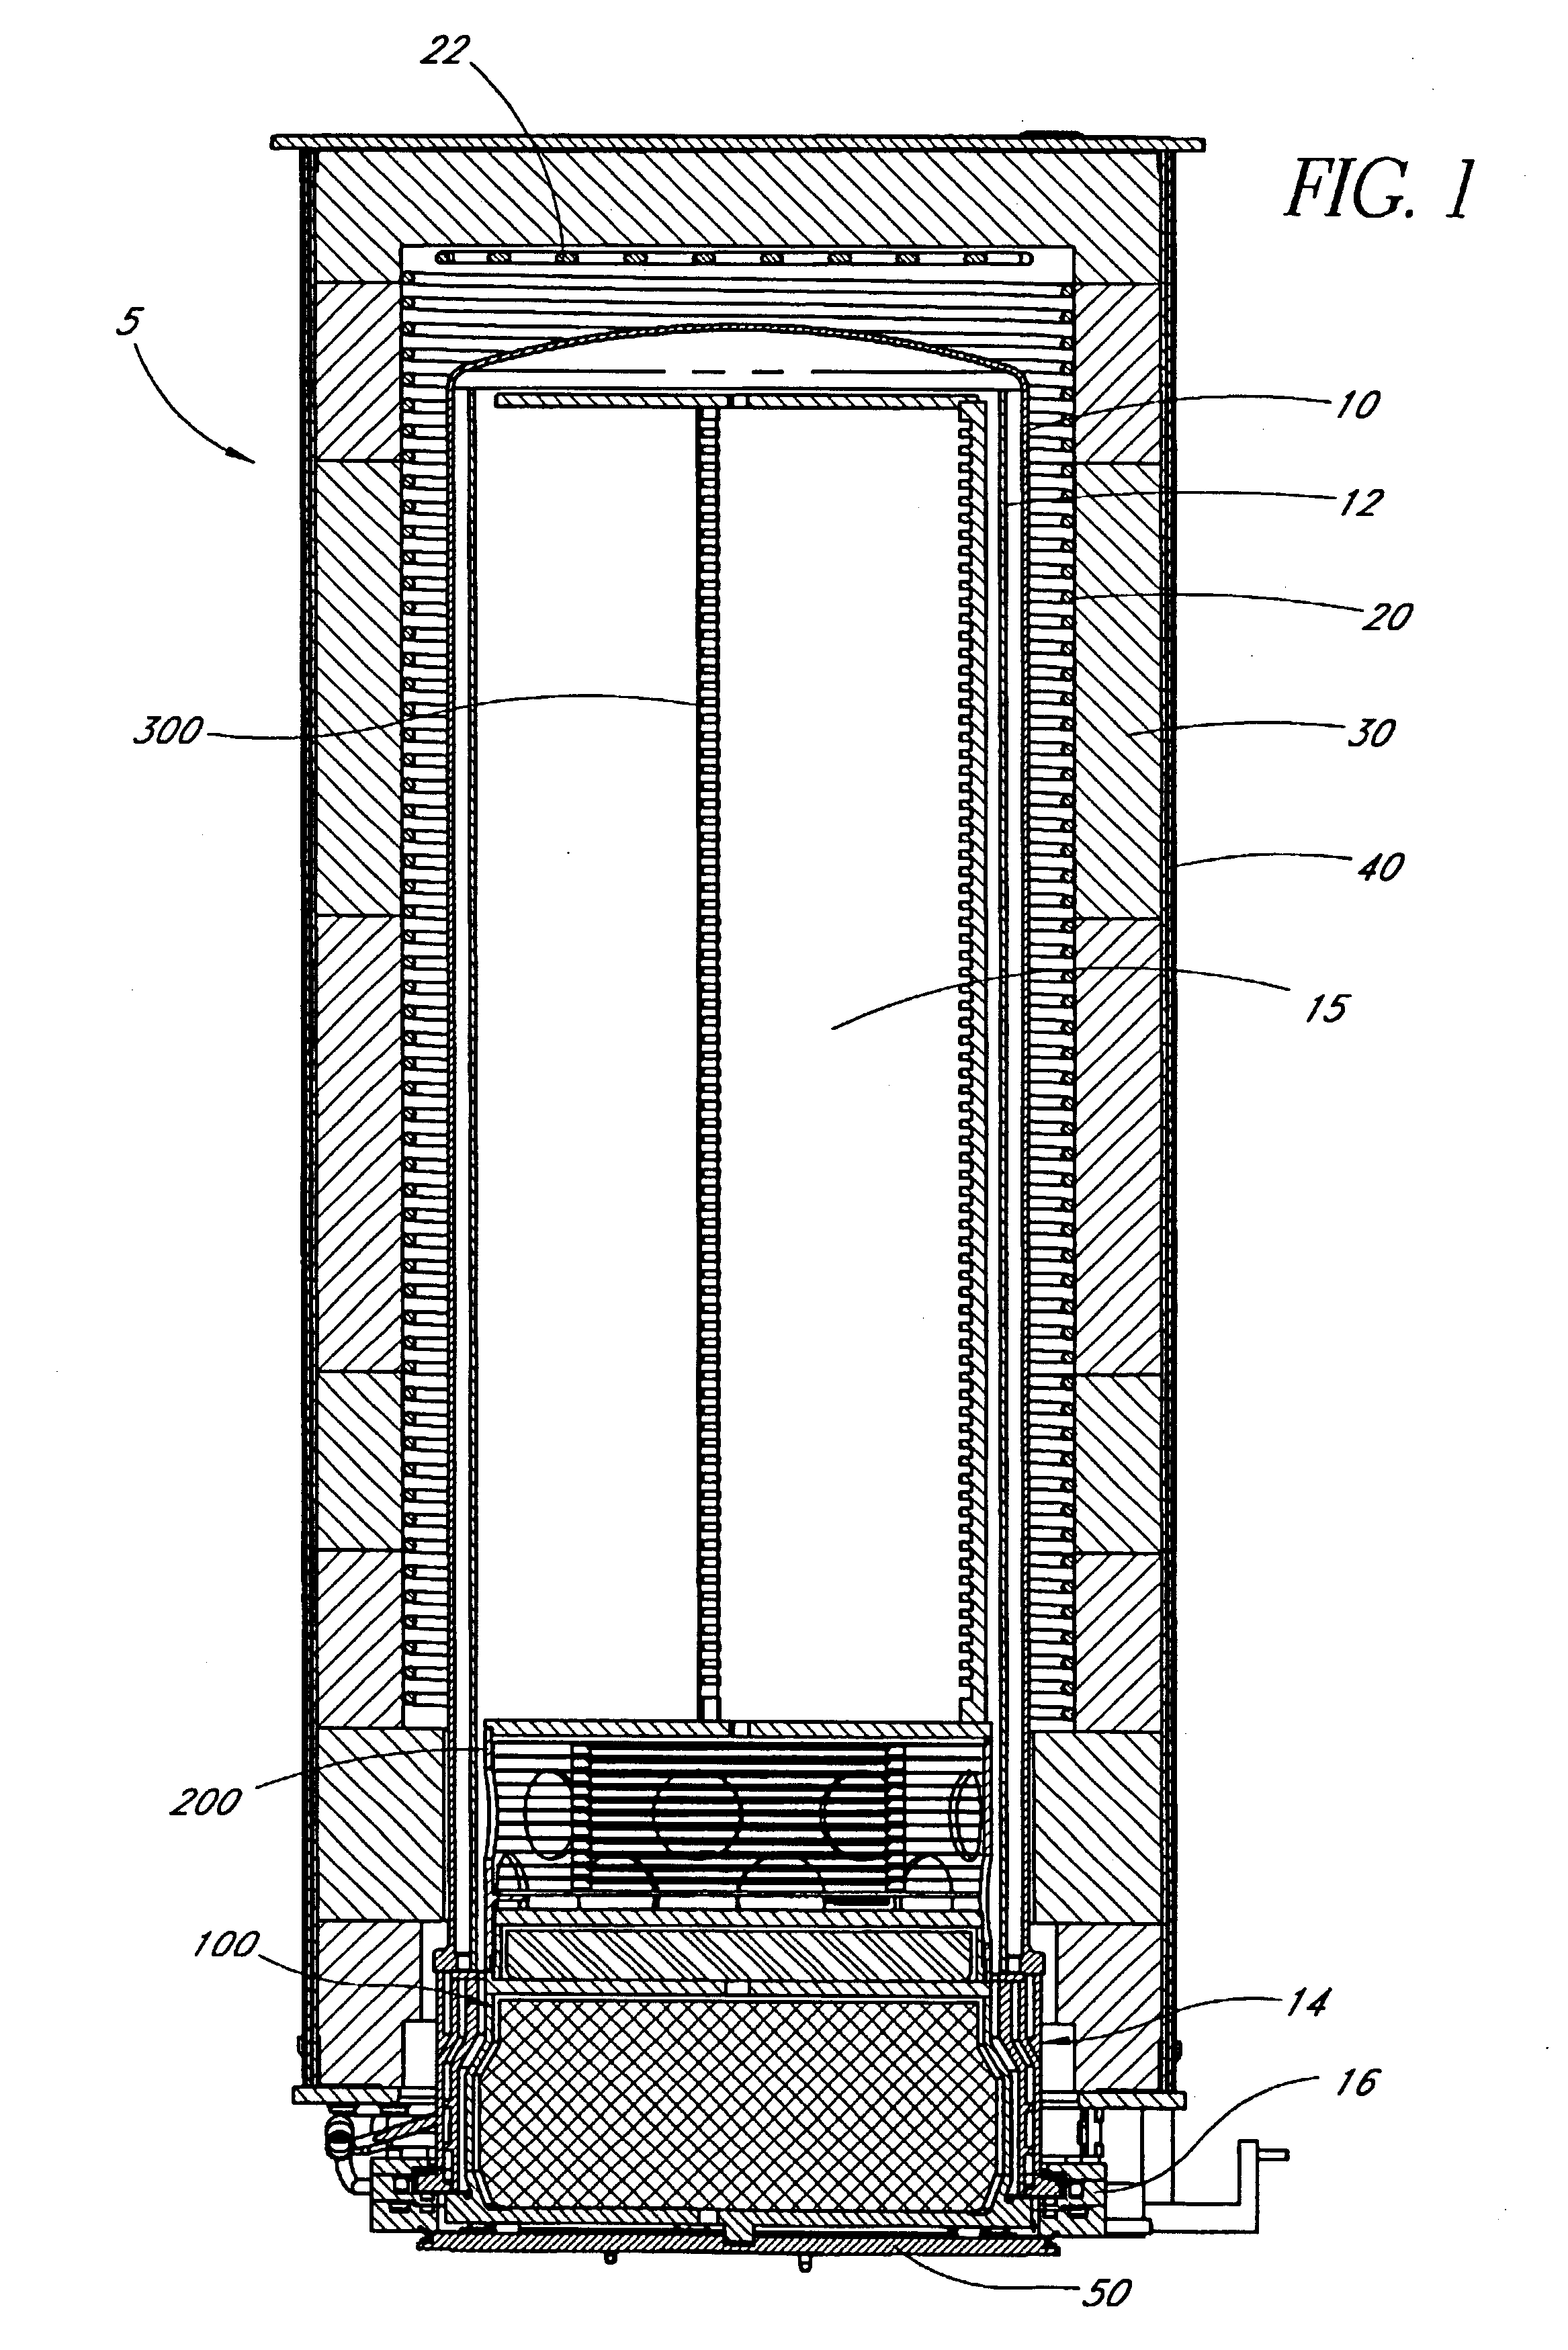 Multilevel pedestal for furnace